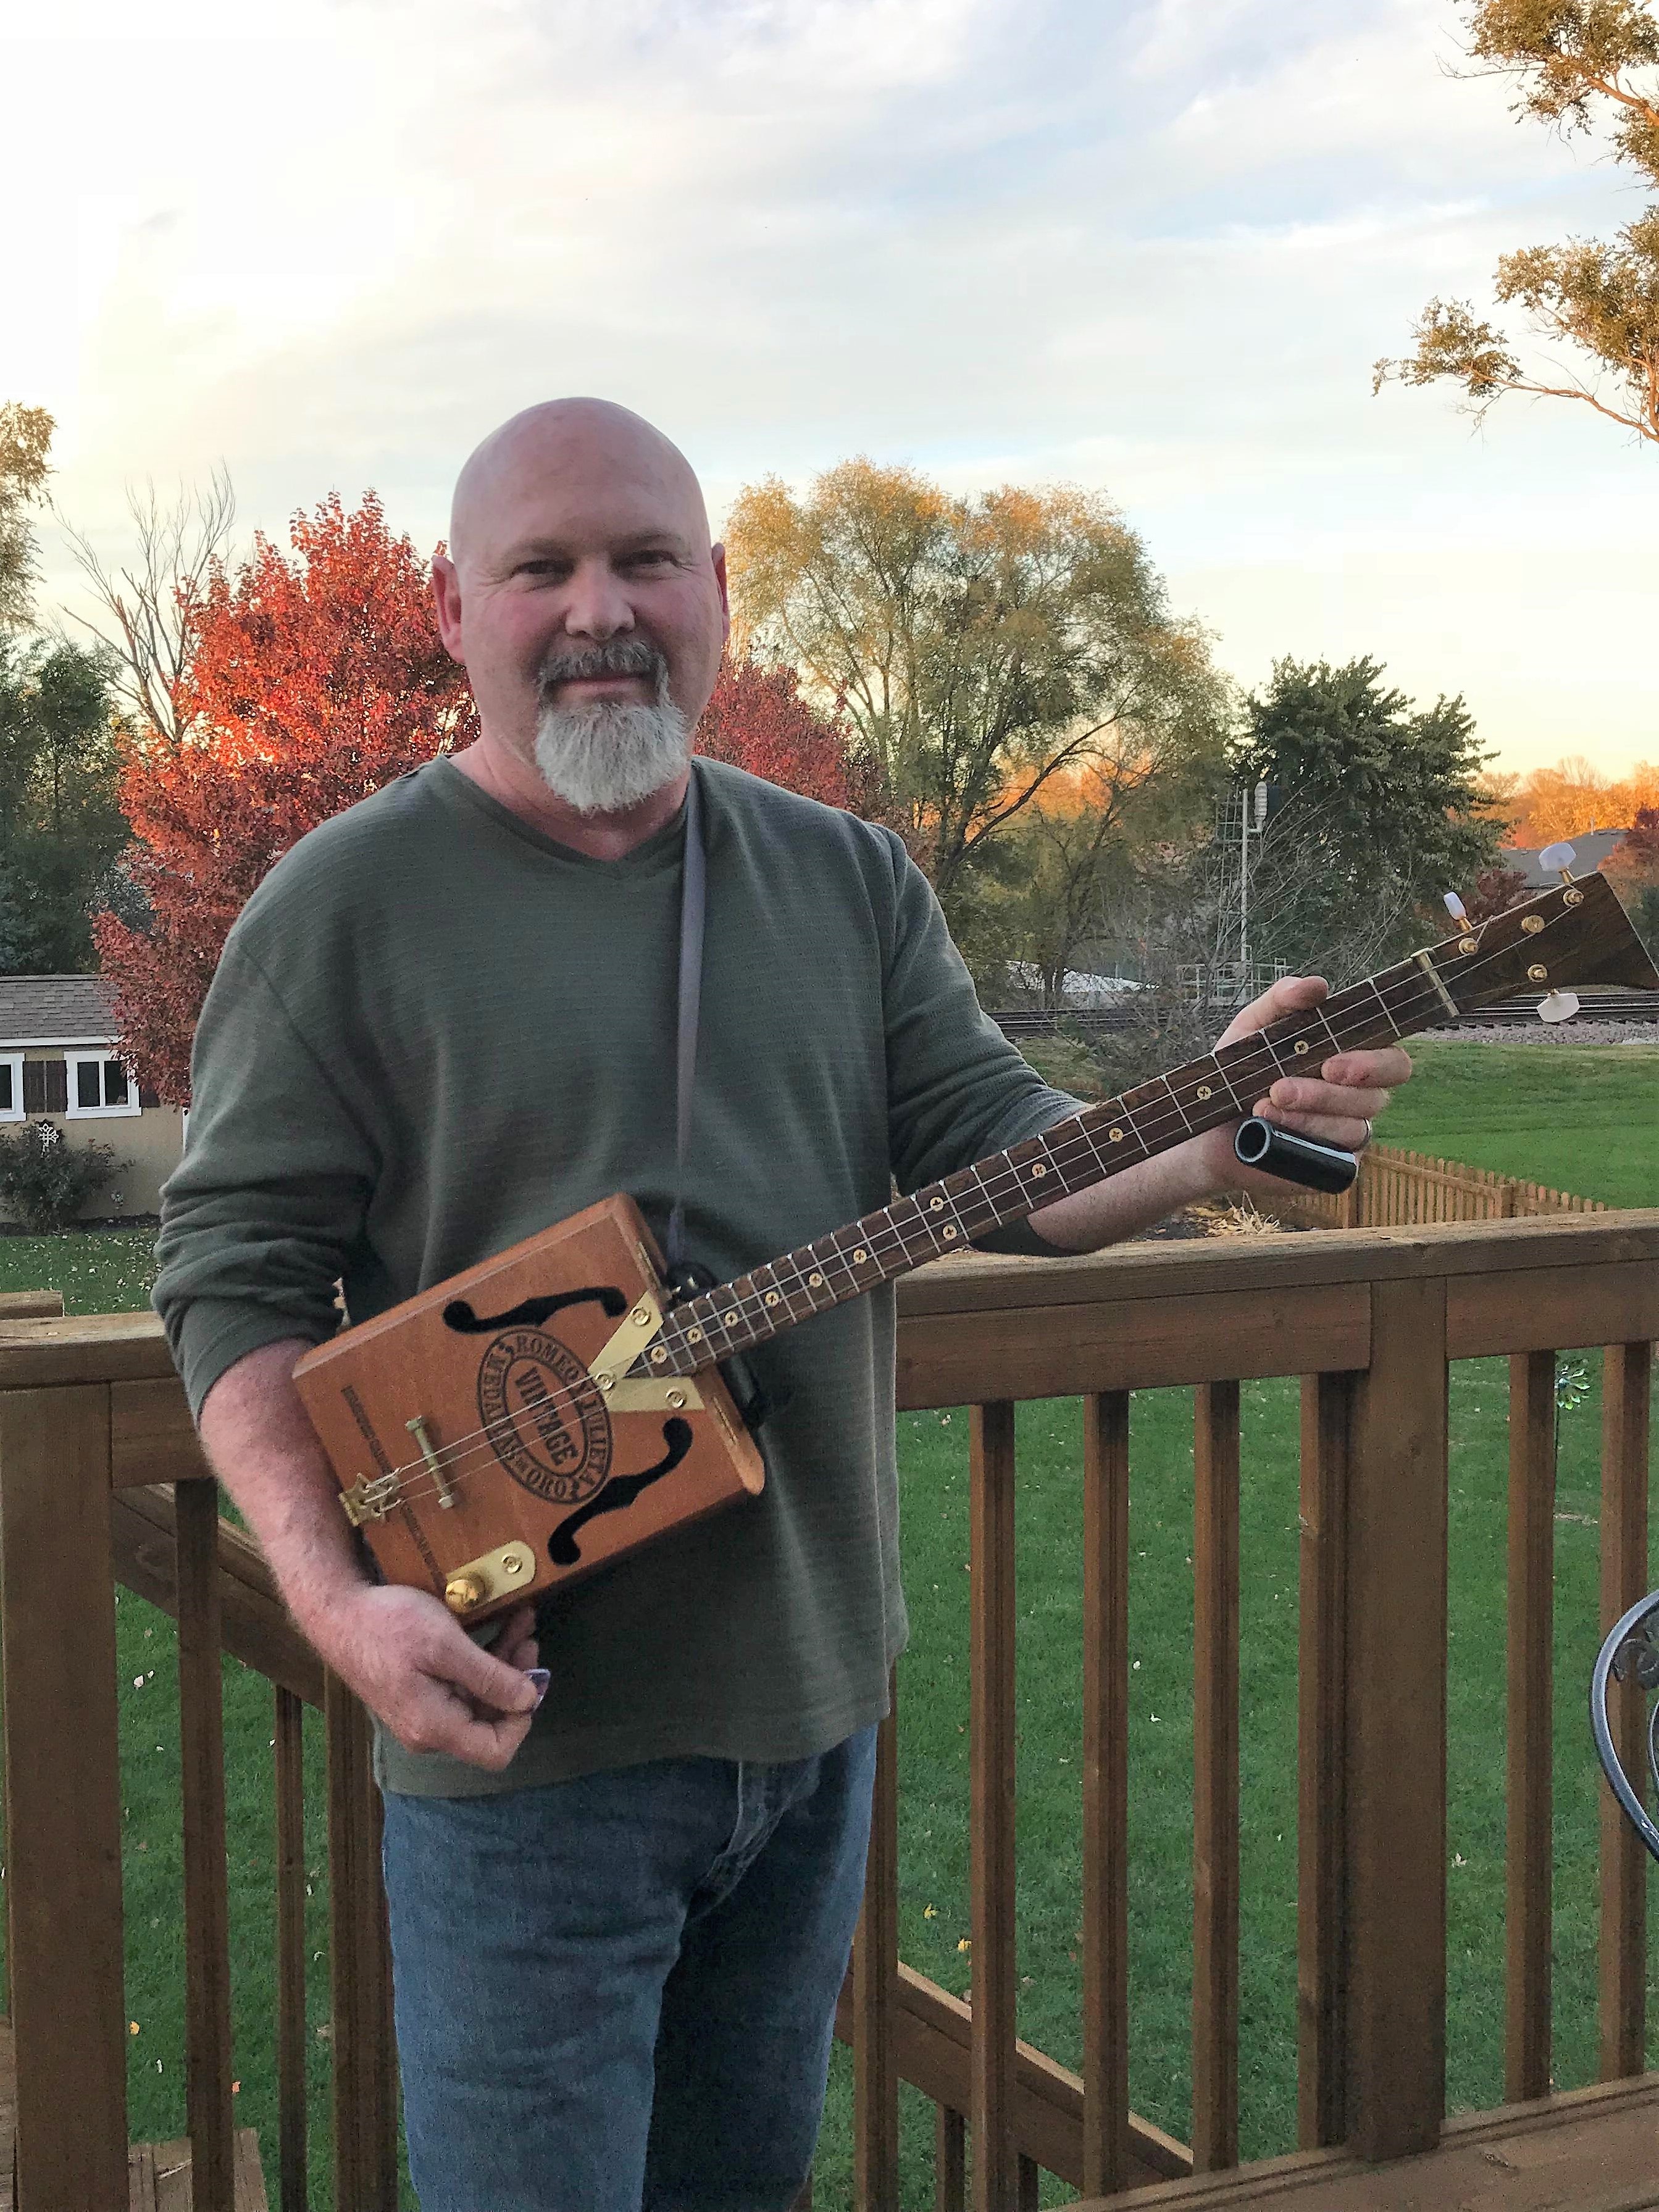 Daniel G. holding the first cigar box guitar he built